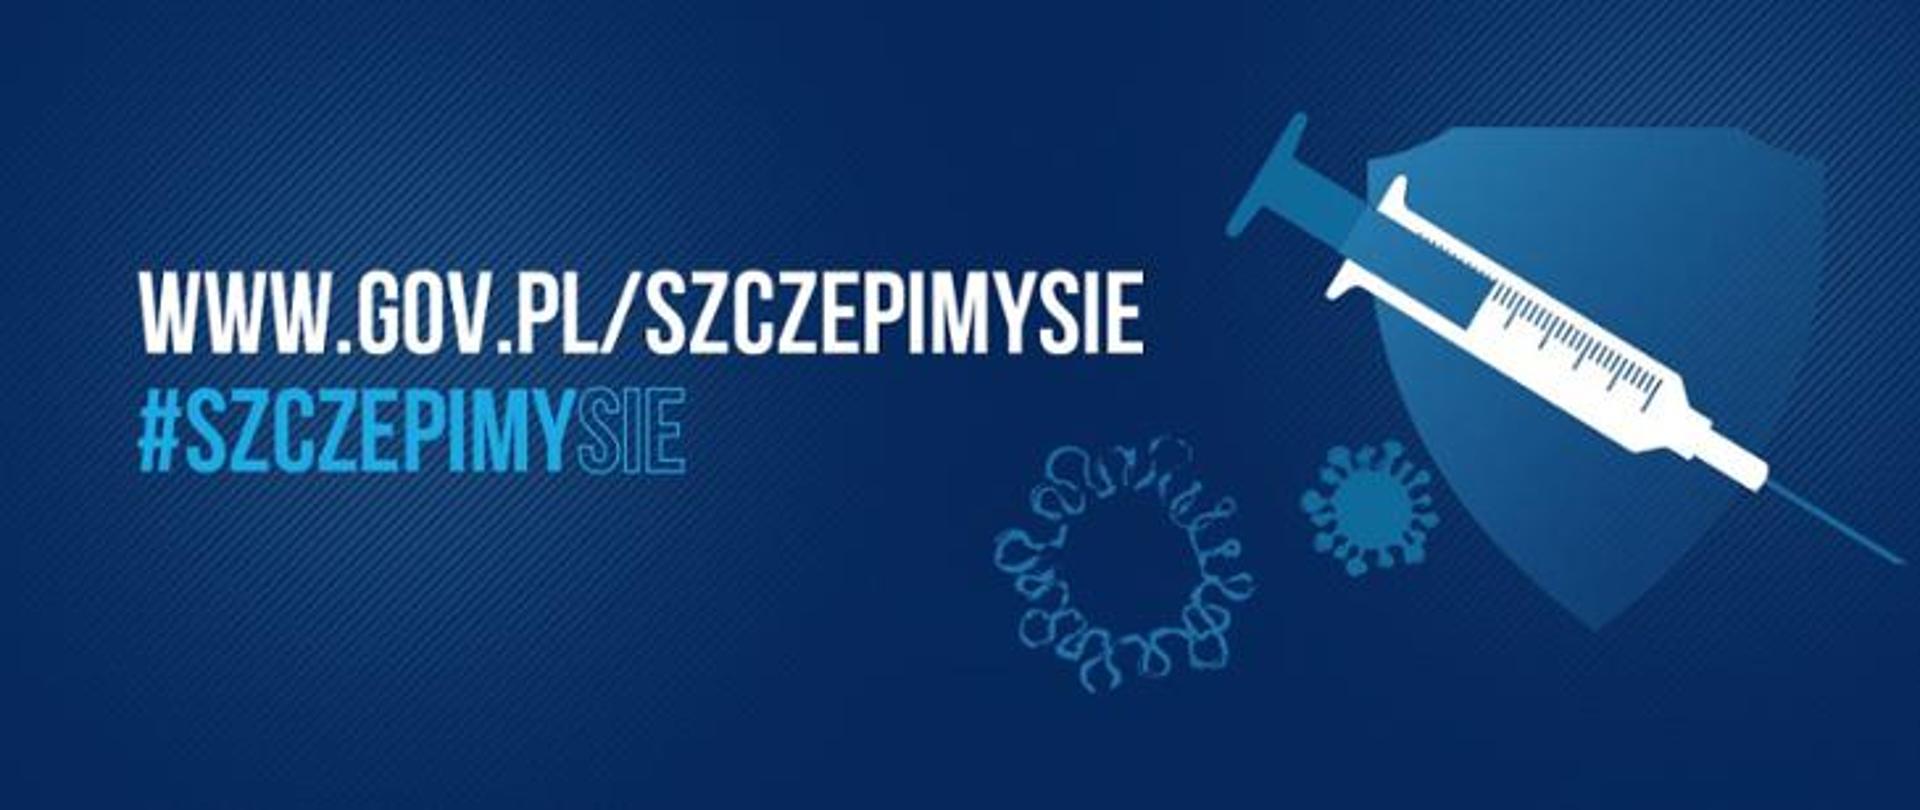 www.gov.pl/szczepimysie baner promocyjny, tarcza ze strzykawką oraz ikona wirusa w tle